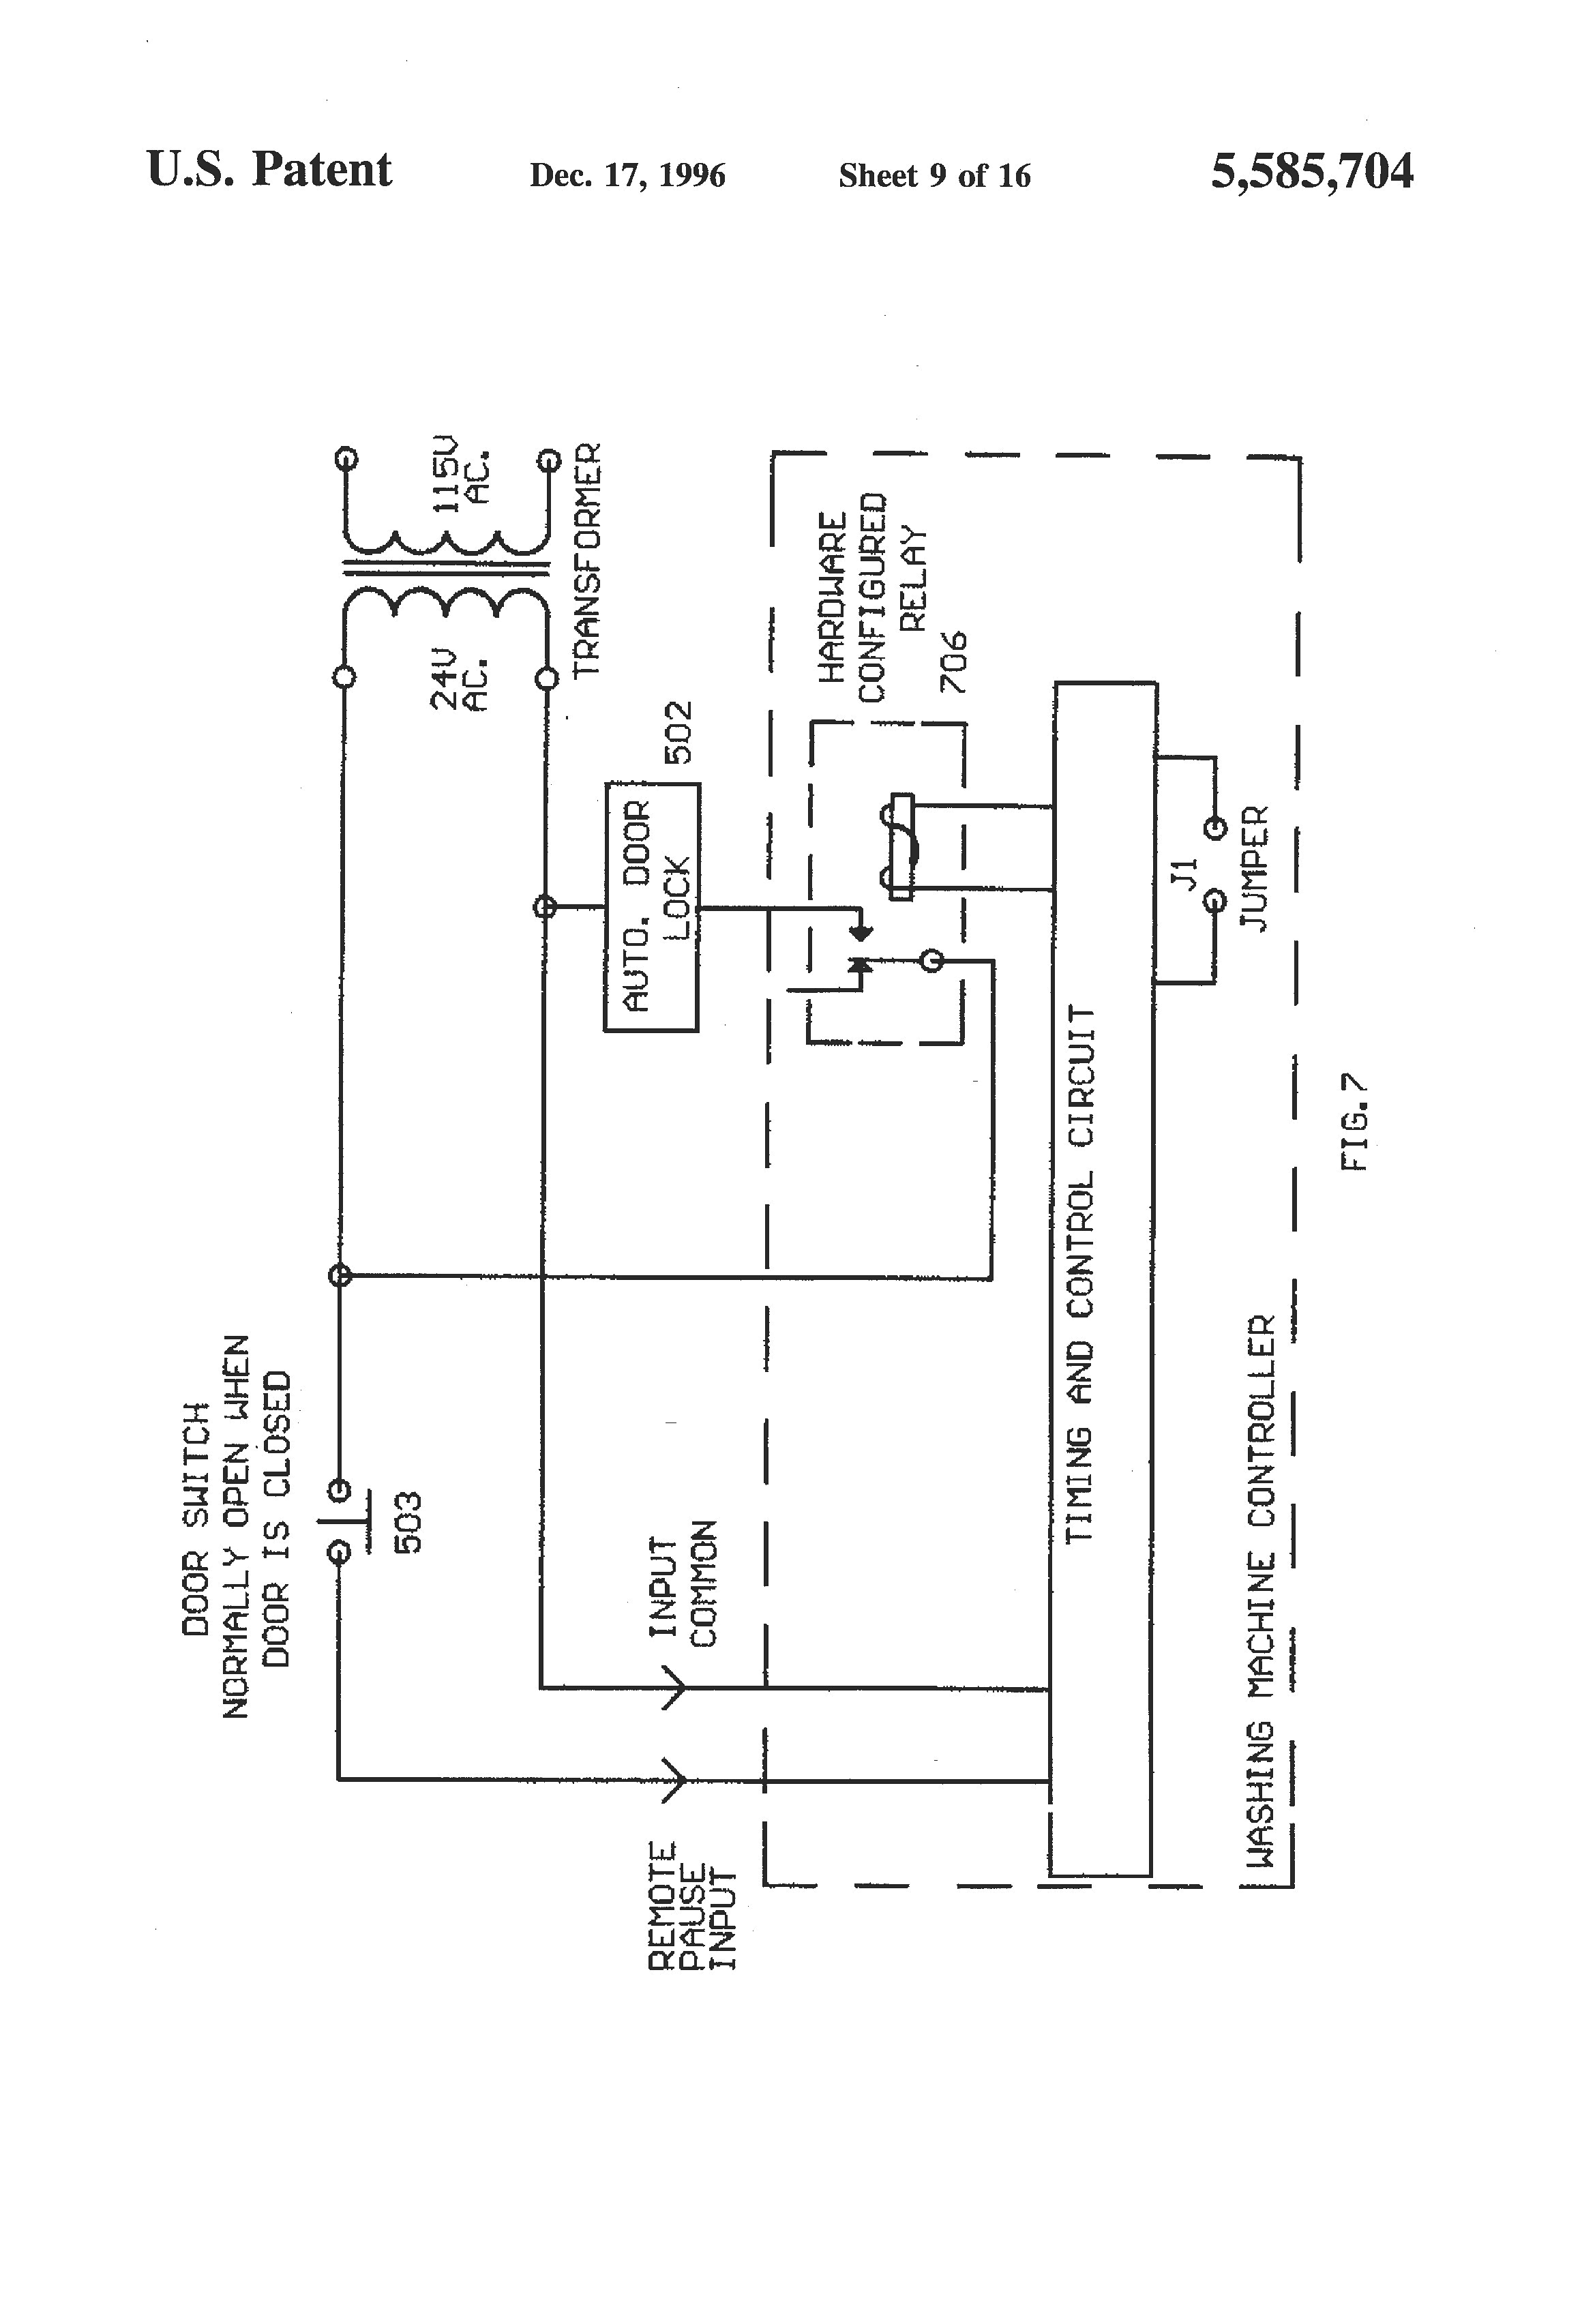 wiring diagram ge profile washing machine wiring diagram repairwiring diagram ge profile washing machine wiring diagram